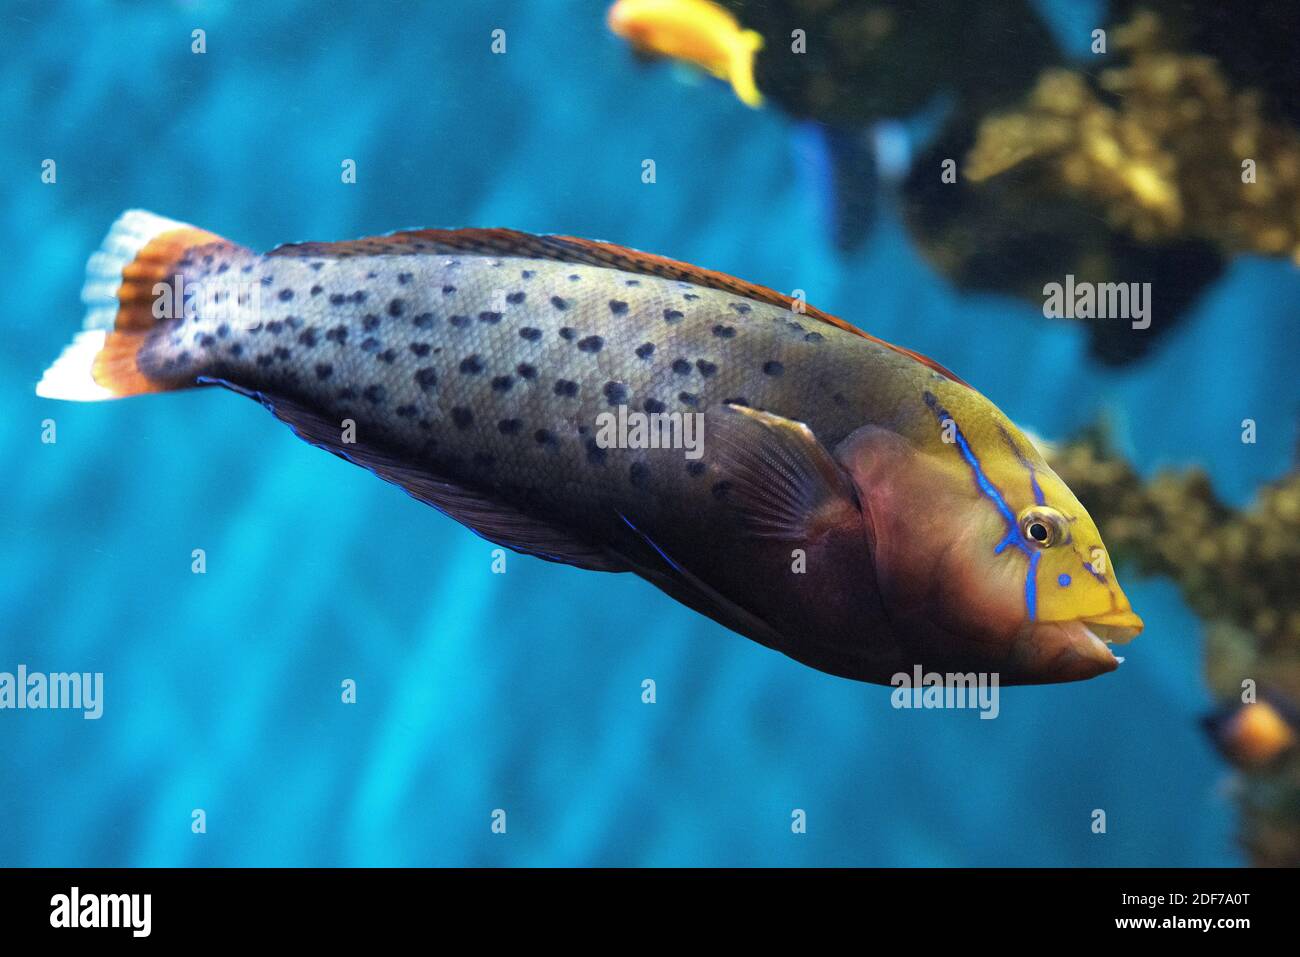 Queen coris oder Formosa Lippfische (Coris formosa) ist ein Meeresfisch, der im tropischen Indischen Ozean beheimatet ist. Erwachsene Probe. Stockfoto